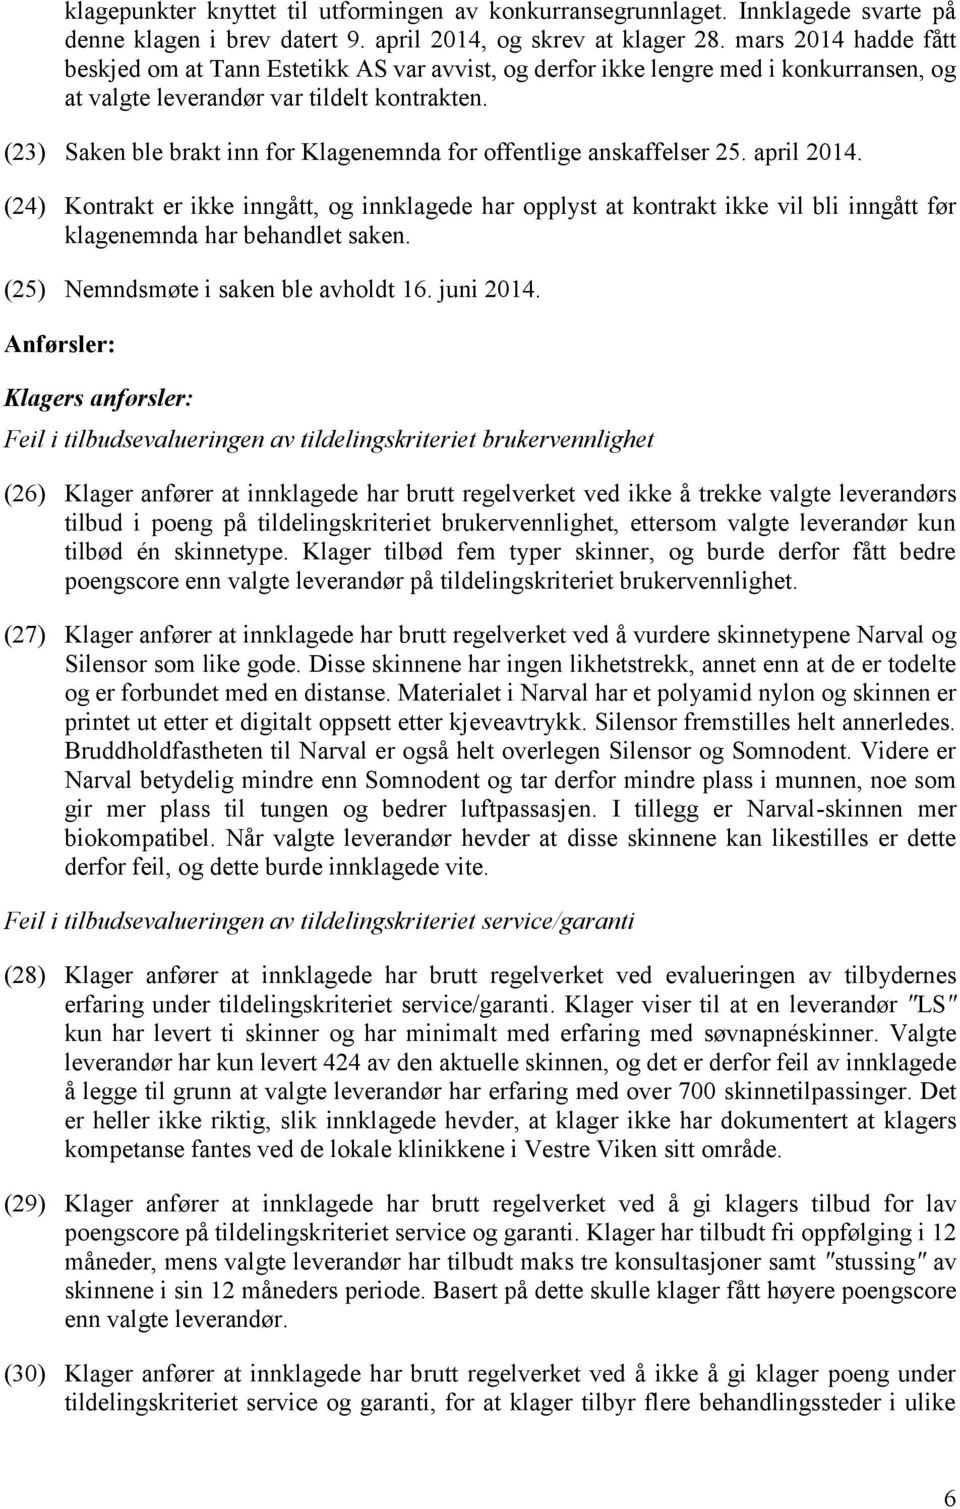 (23) Saken ble brakt inn for Klagenemnda for offentlige anskaffelser 25. april 2014.